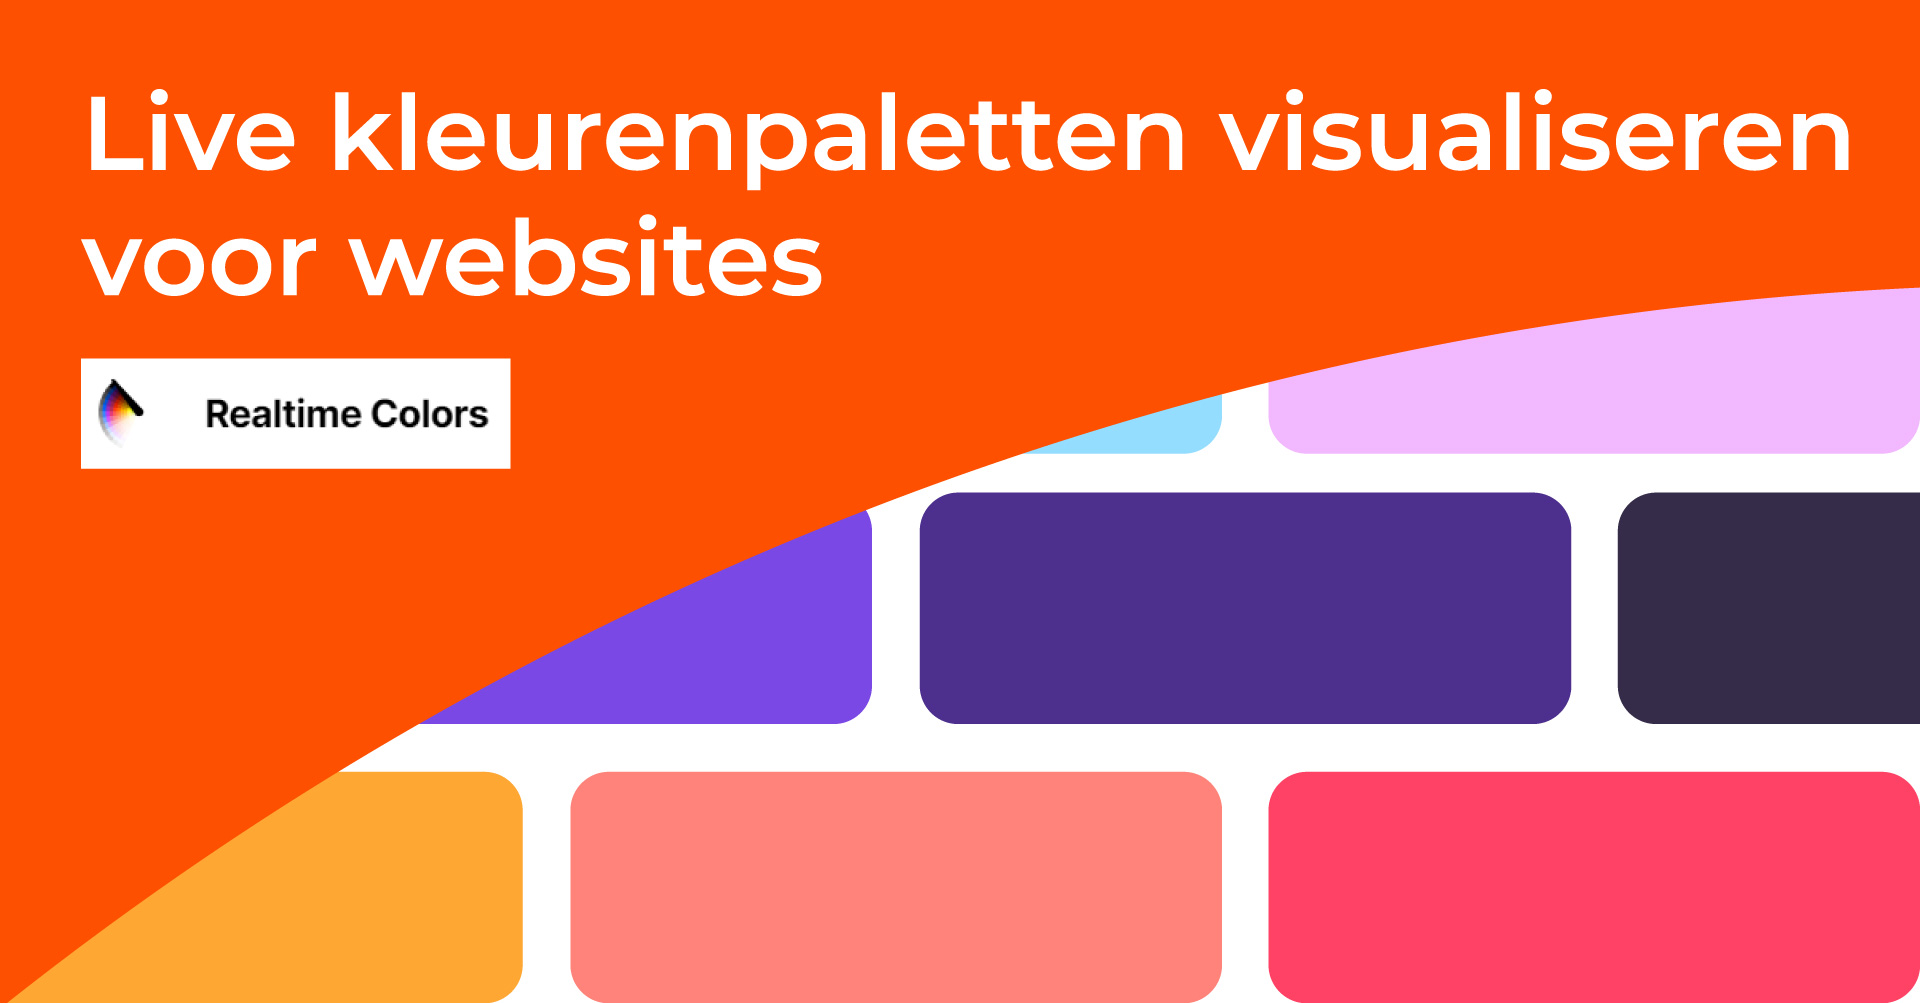 Live kleurenpaletten visualiseren voor websites